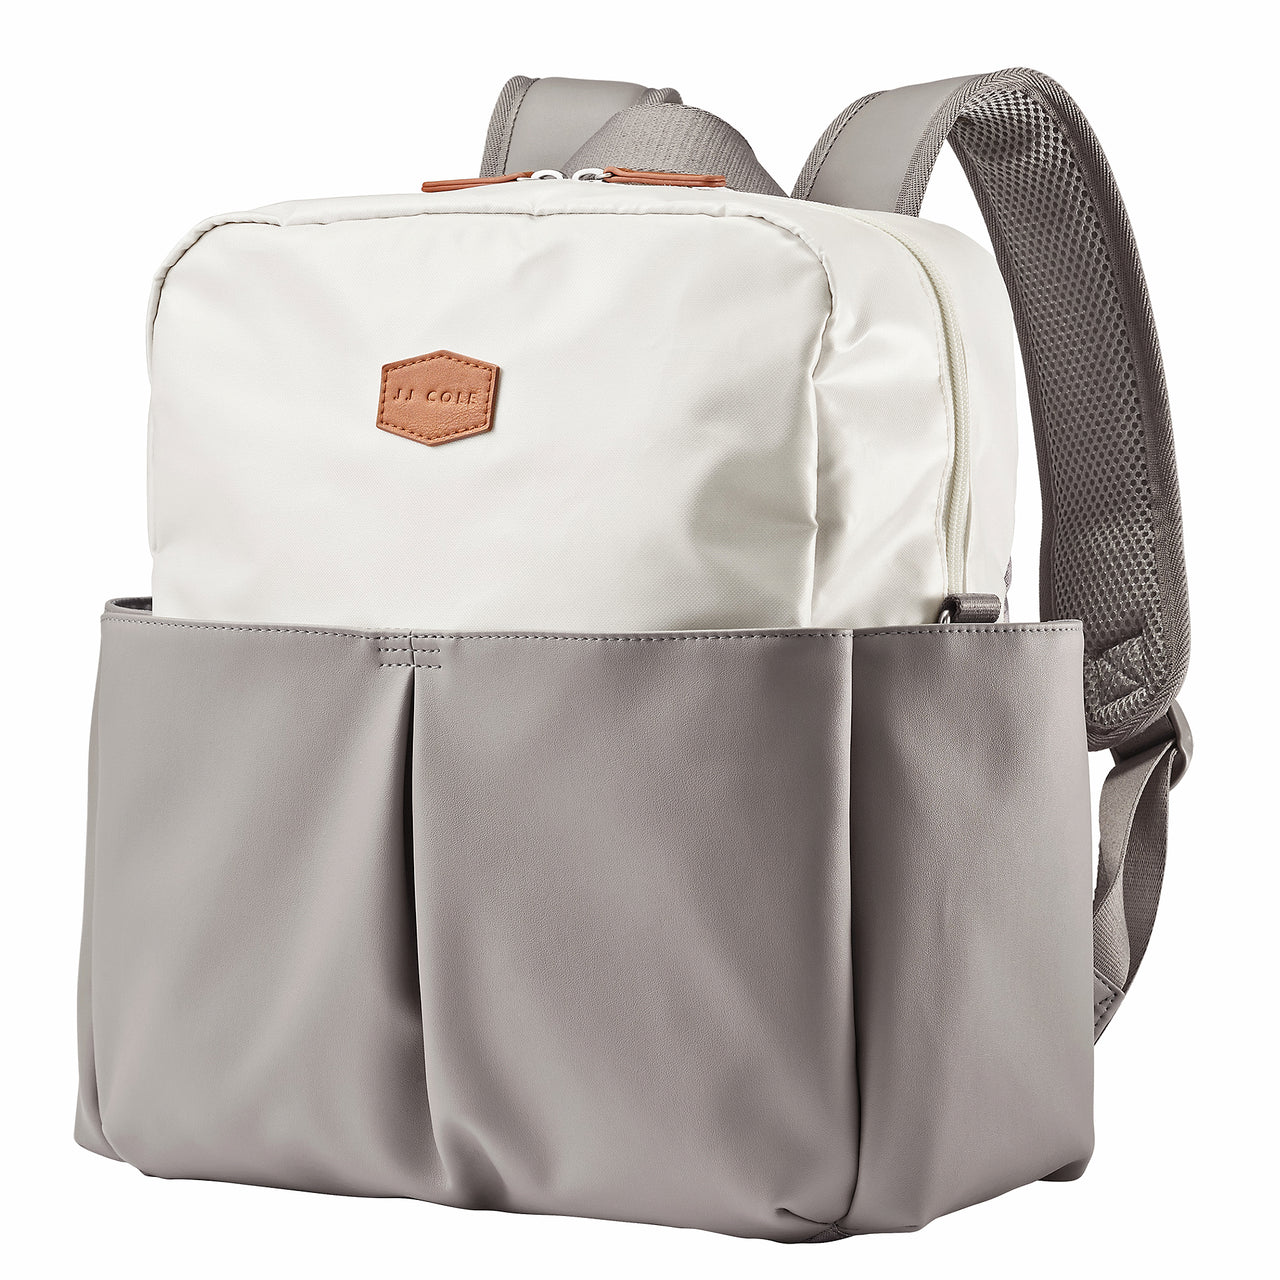 JJ Cole Popperton Boxy Backpack Diaper Bag - Cream & Mushroom-JJ COLE-Little Giant Kidz